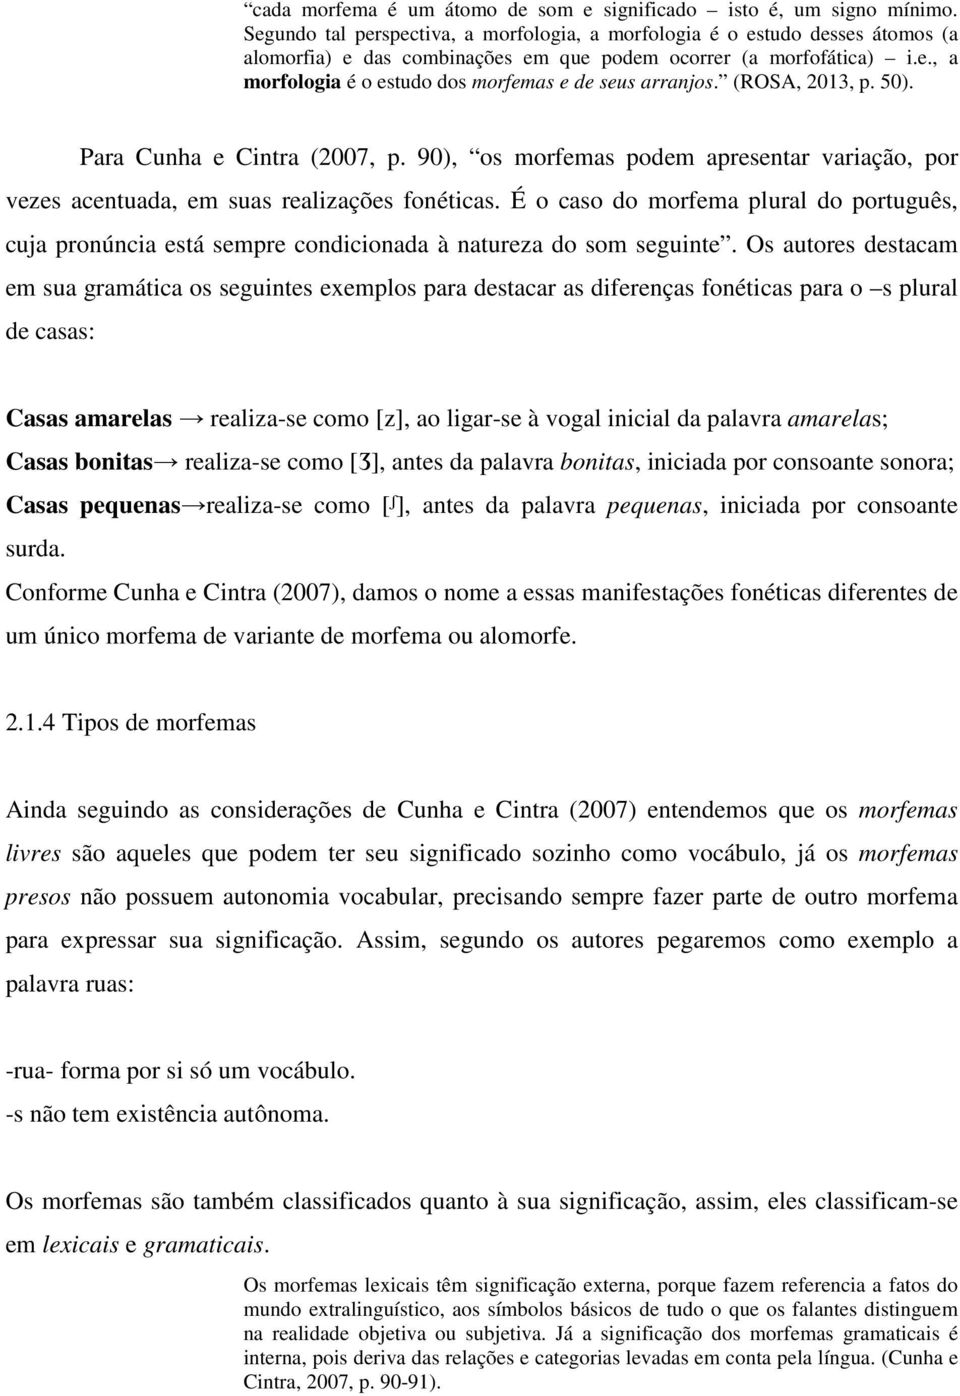 (ROSA, 2013, p. 50). Para Cunha e Cintra (2007, p. 90), os morfemas podem apresentar variação, por vezes acentuada, em suas realizações fonéticas.